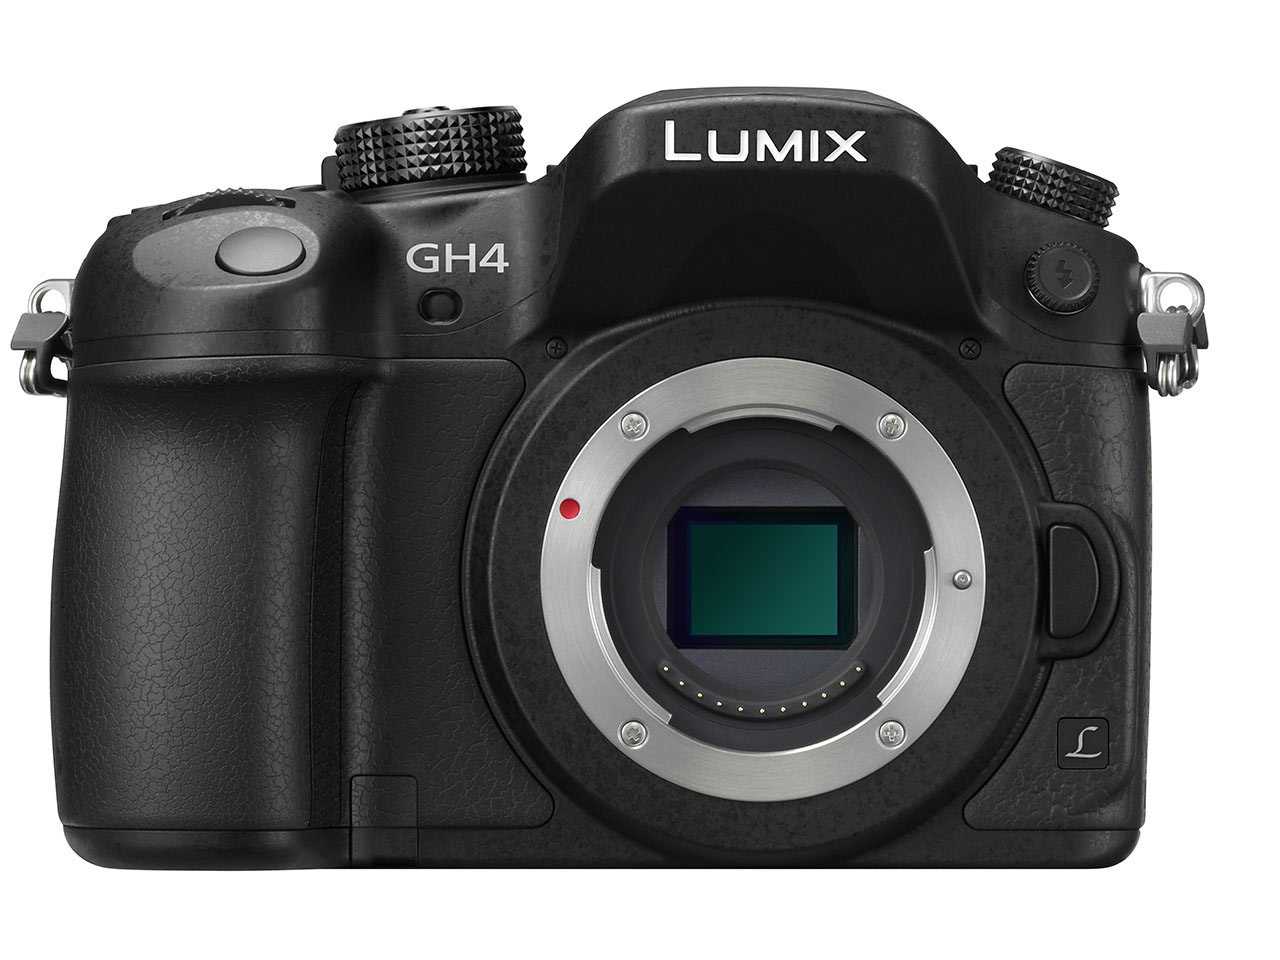 Беззеркальный фотоаппарат panasonic lumix dmc-gh3 - купить | цены | обзоры и тесты | отзывы | параметры и характеристики | инструкция